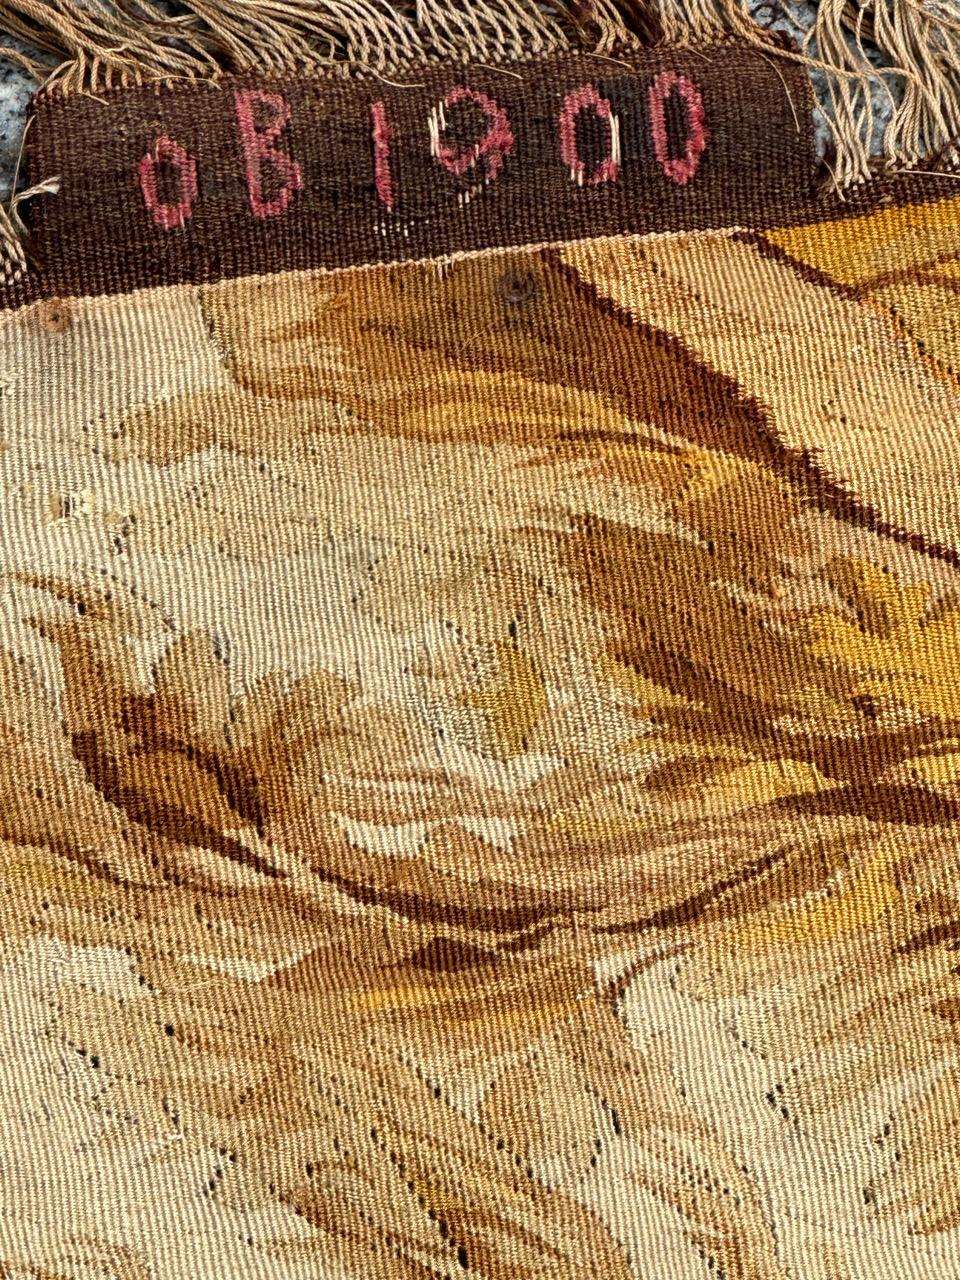 Français Bobyrug's Wonderful Fine Antique French Aubusson Tapestry (Tapisserie d'Aubusson française ancienne) en vente